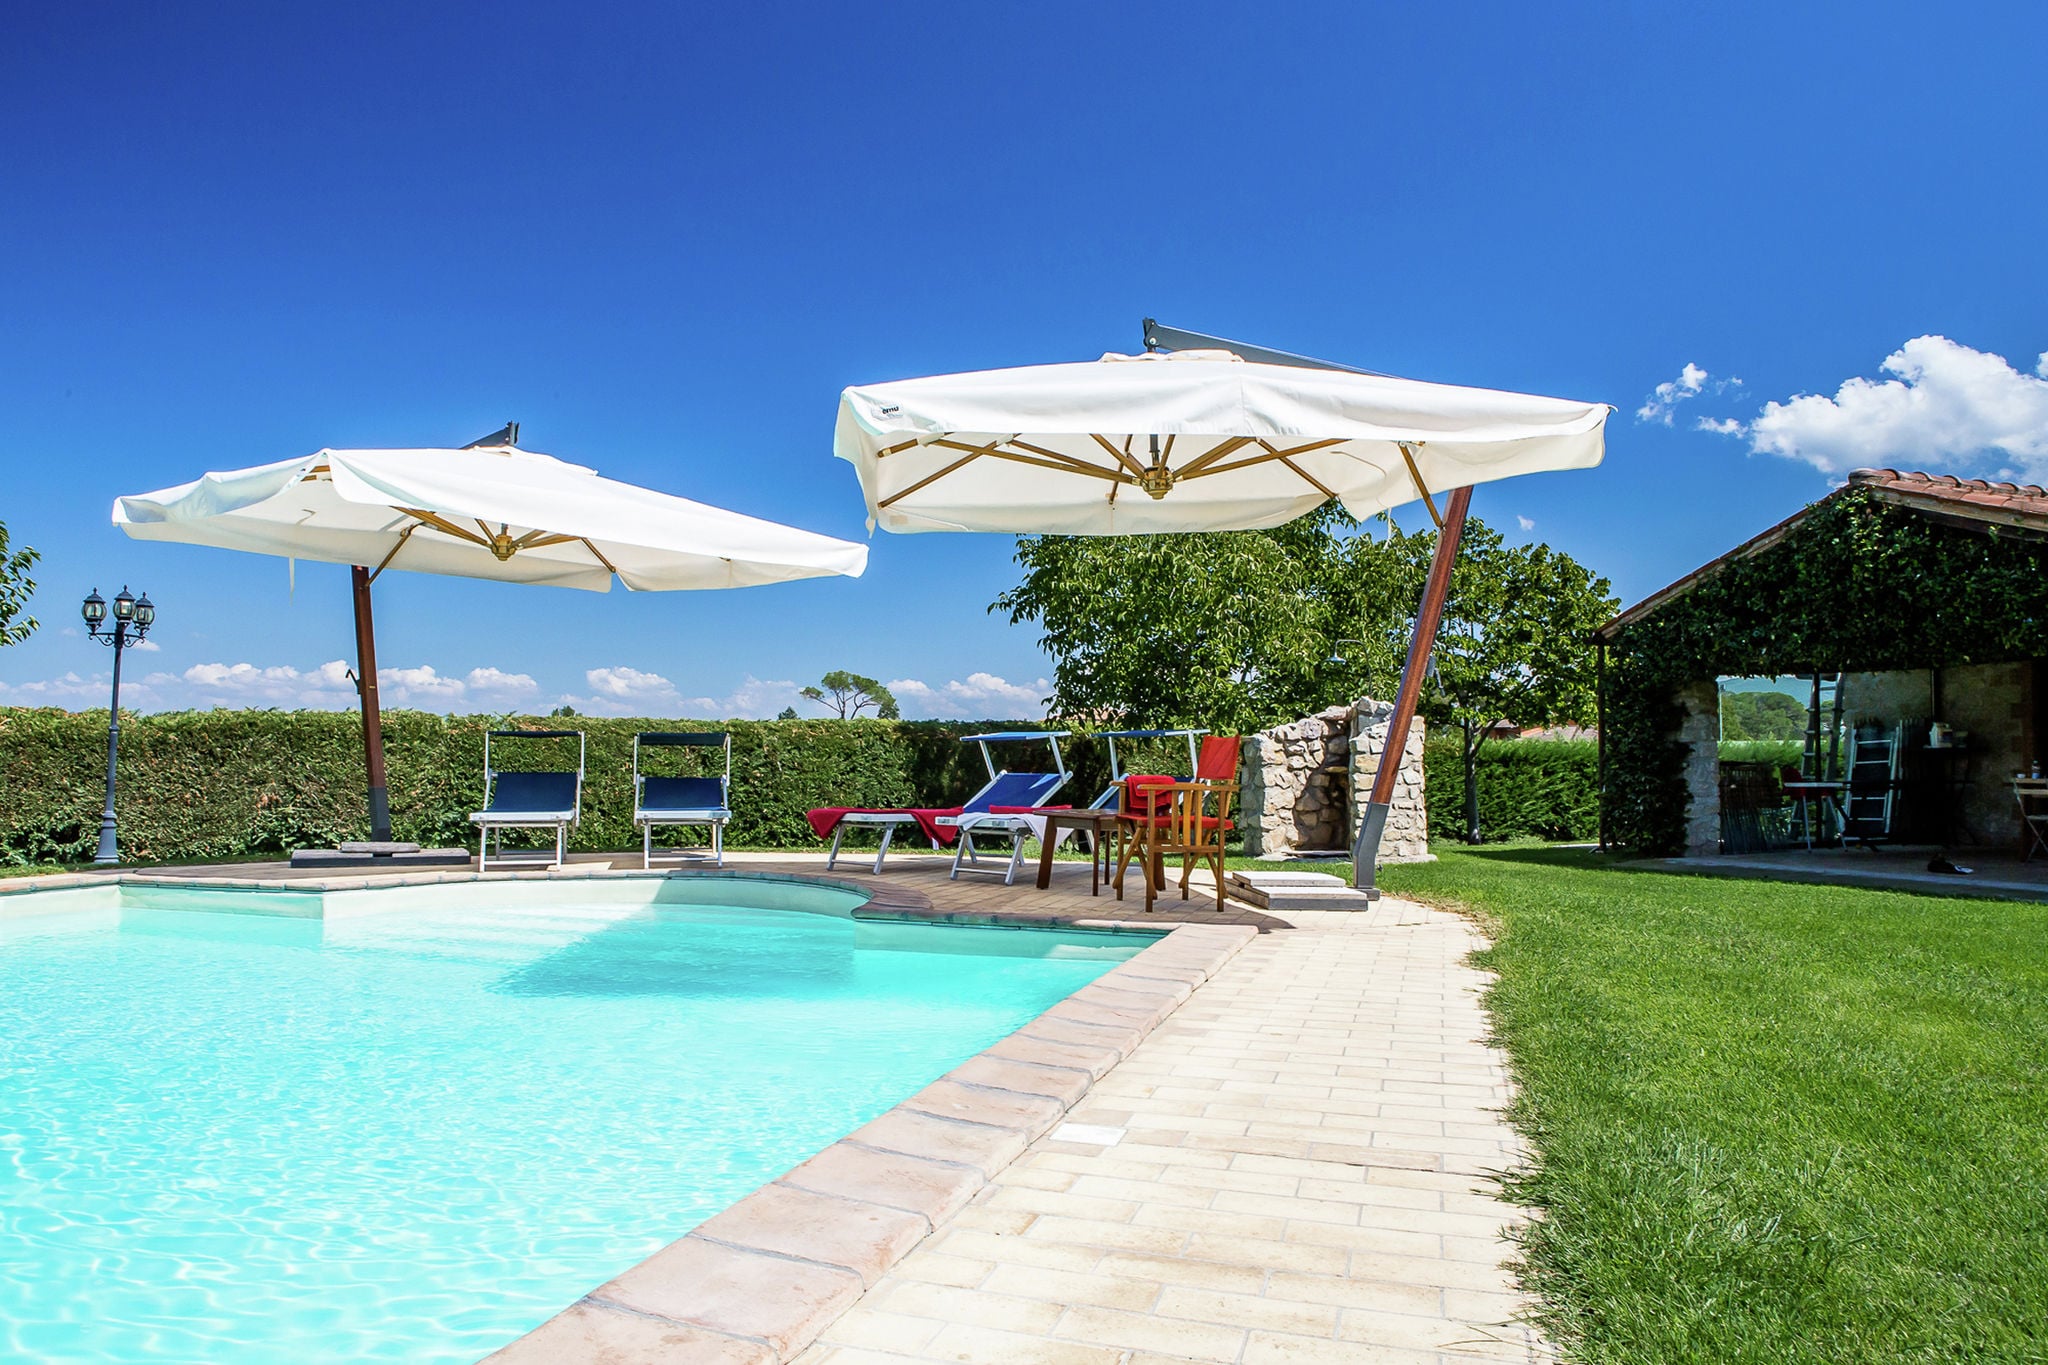 Appartement indépendant près de Todi avec piscine privée